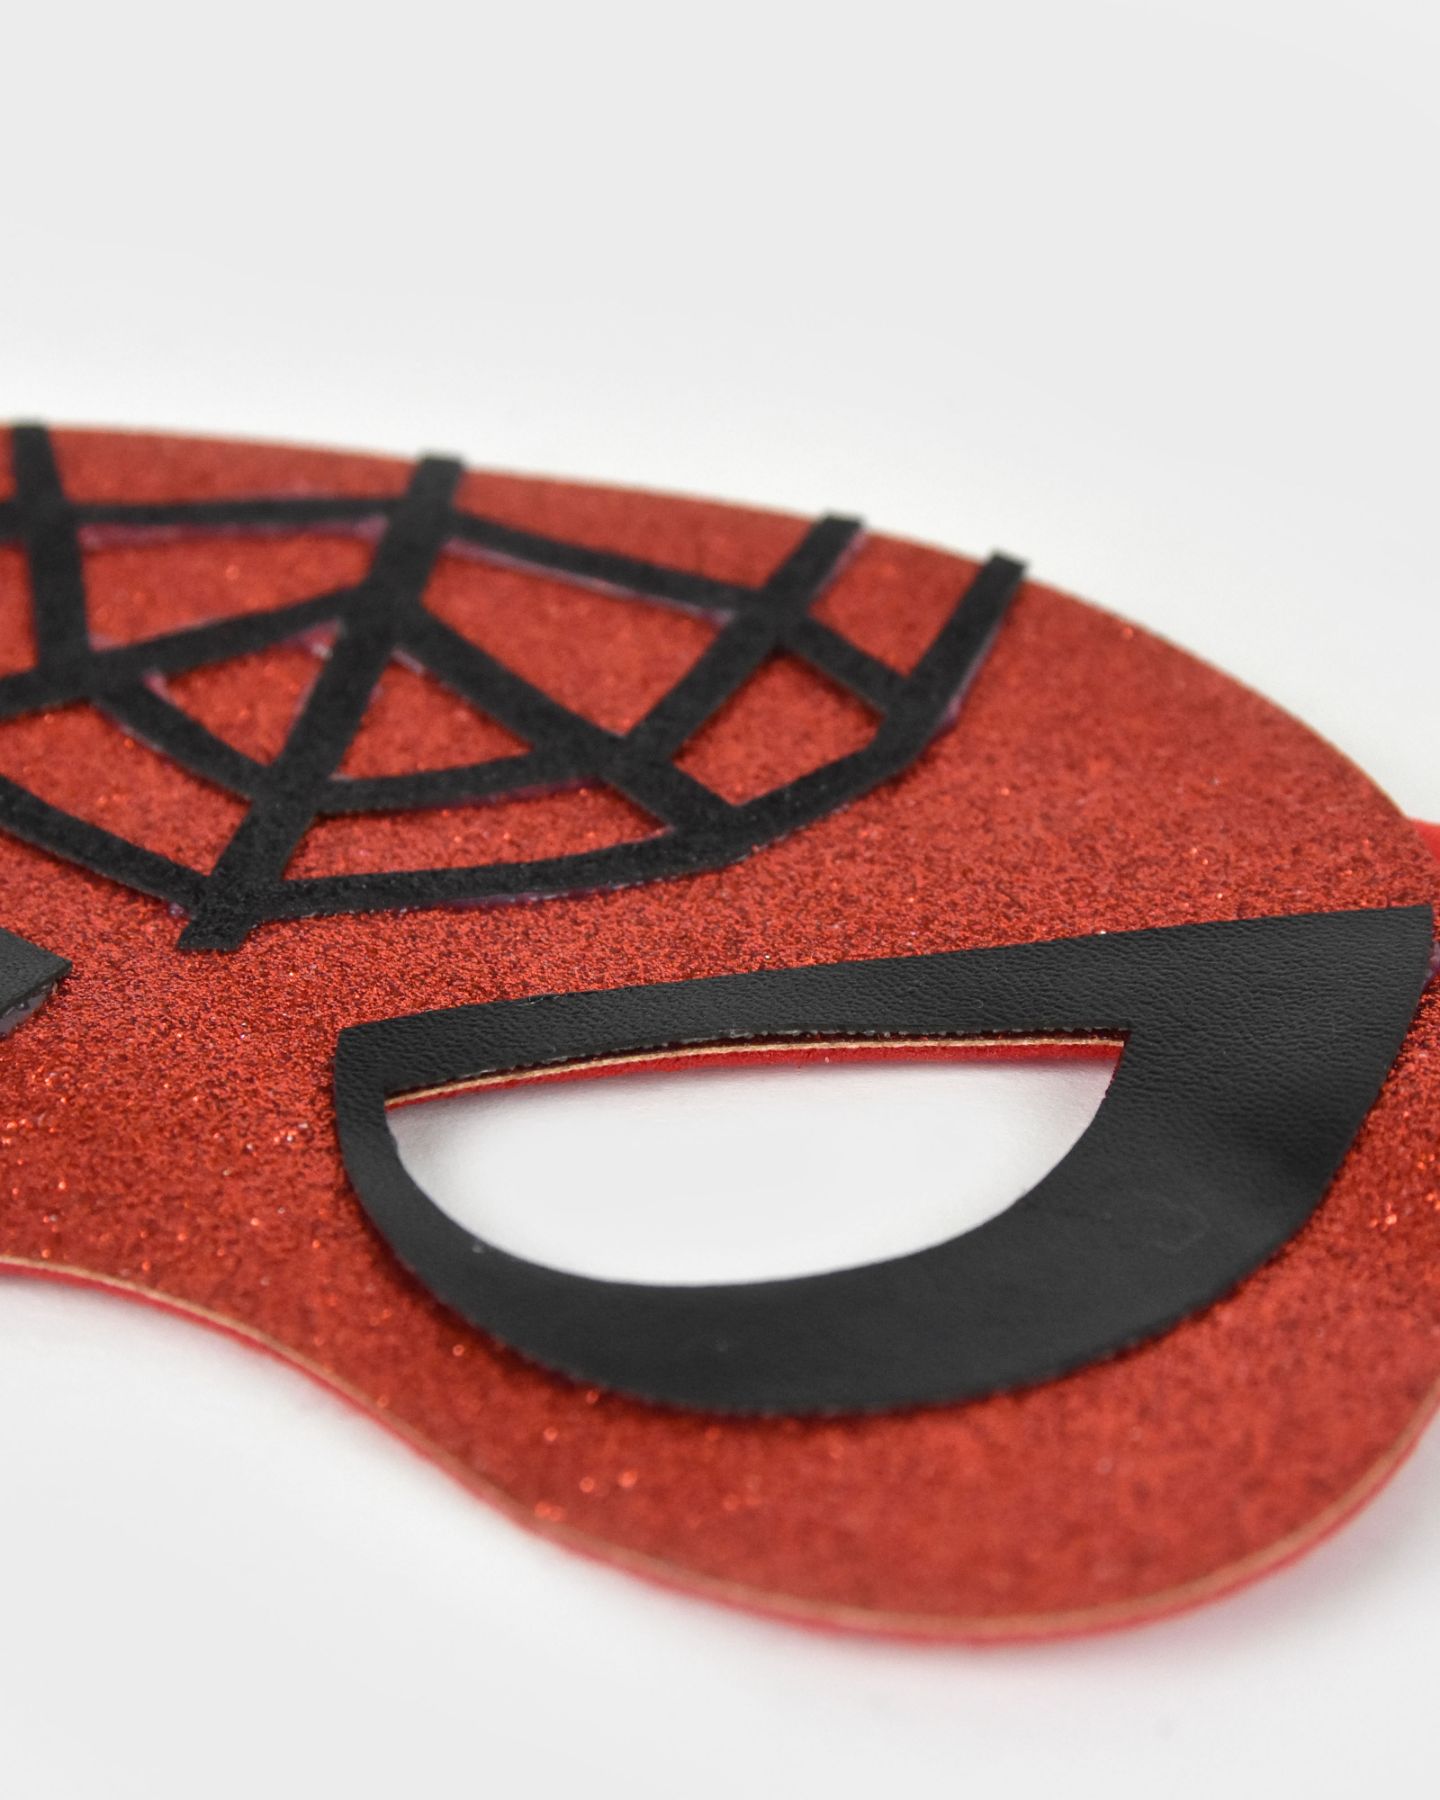 Närbild på en röd glittrig spindelmannenmask med svarta detaljer.